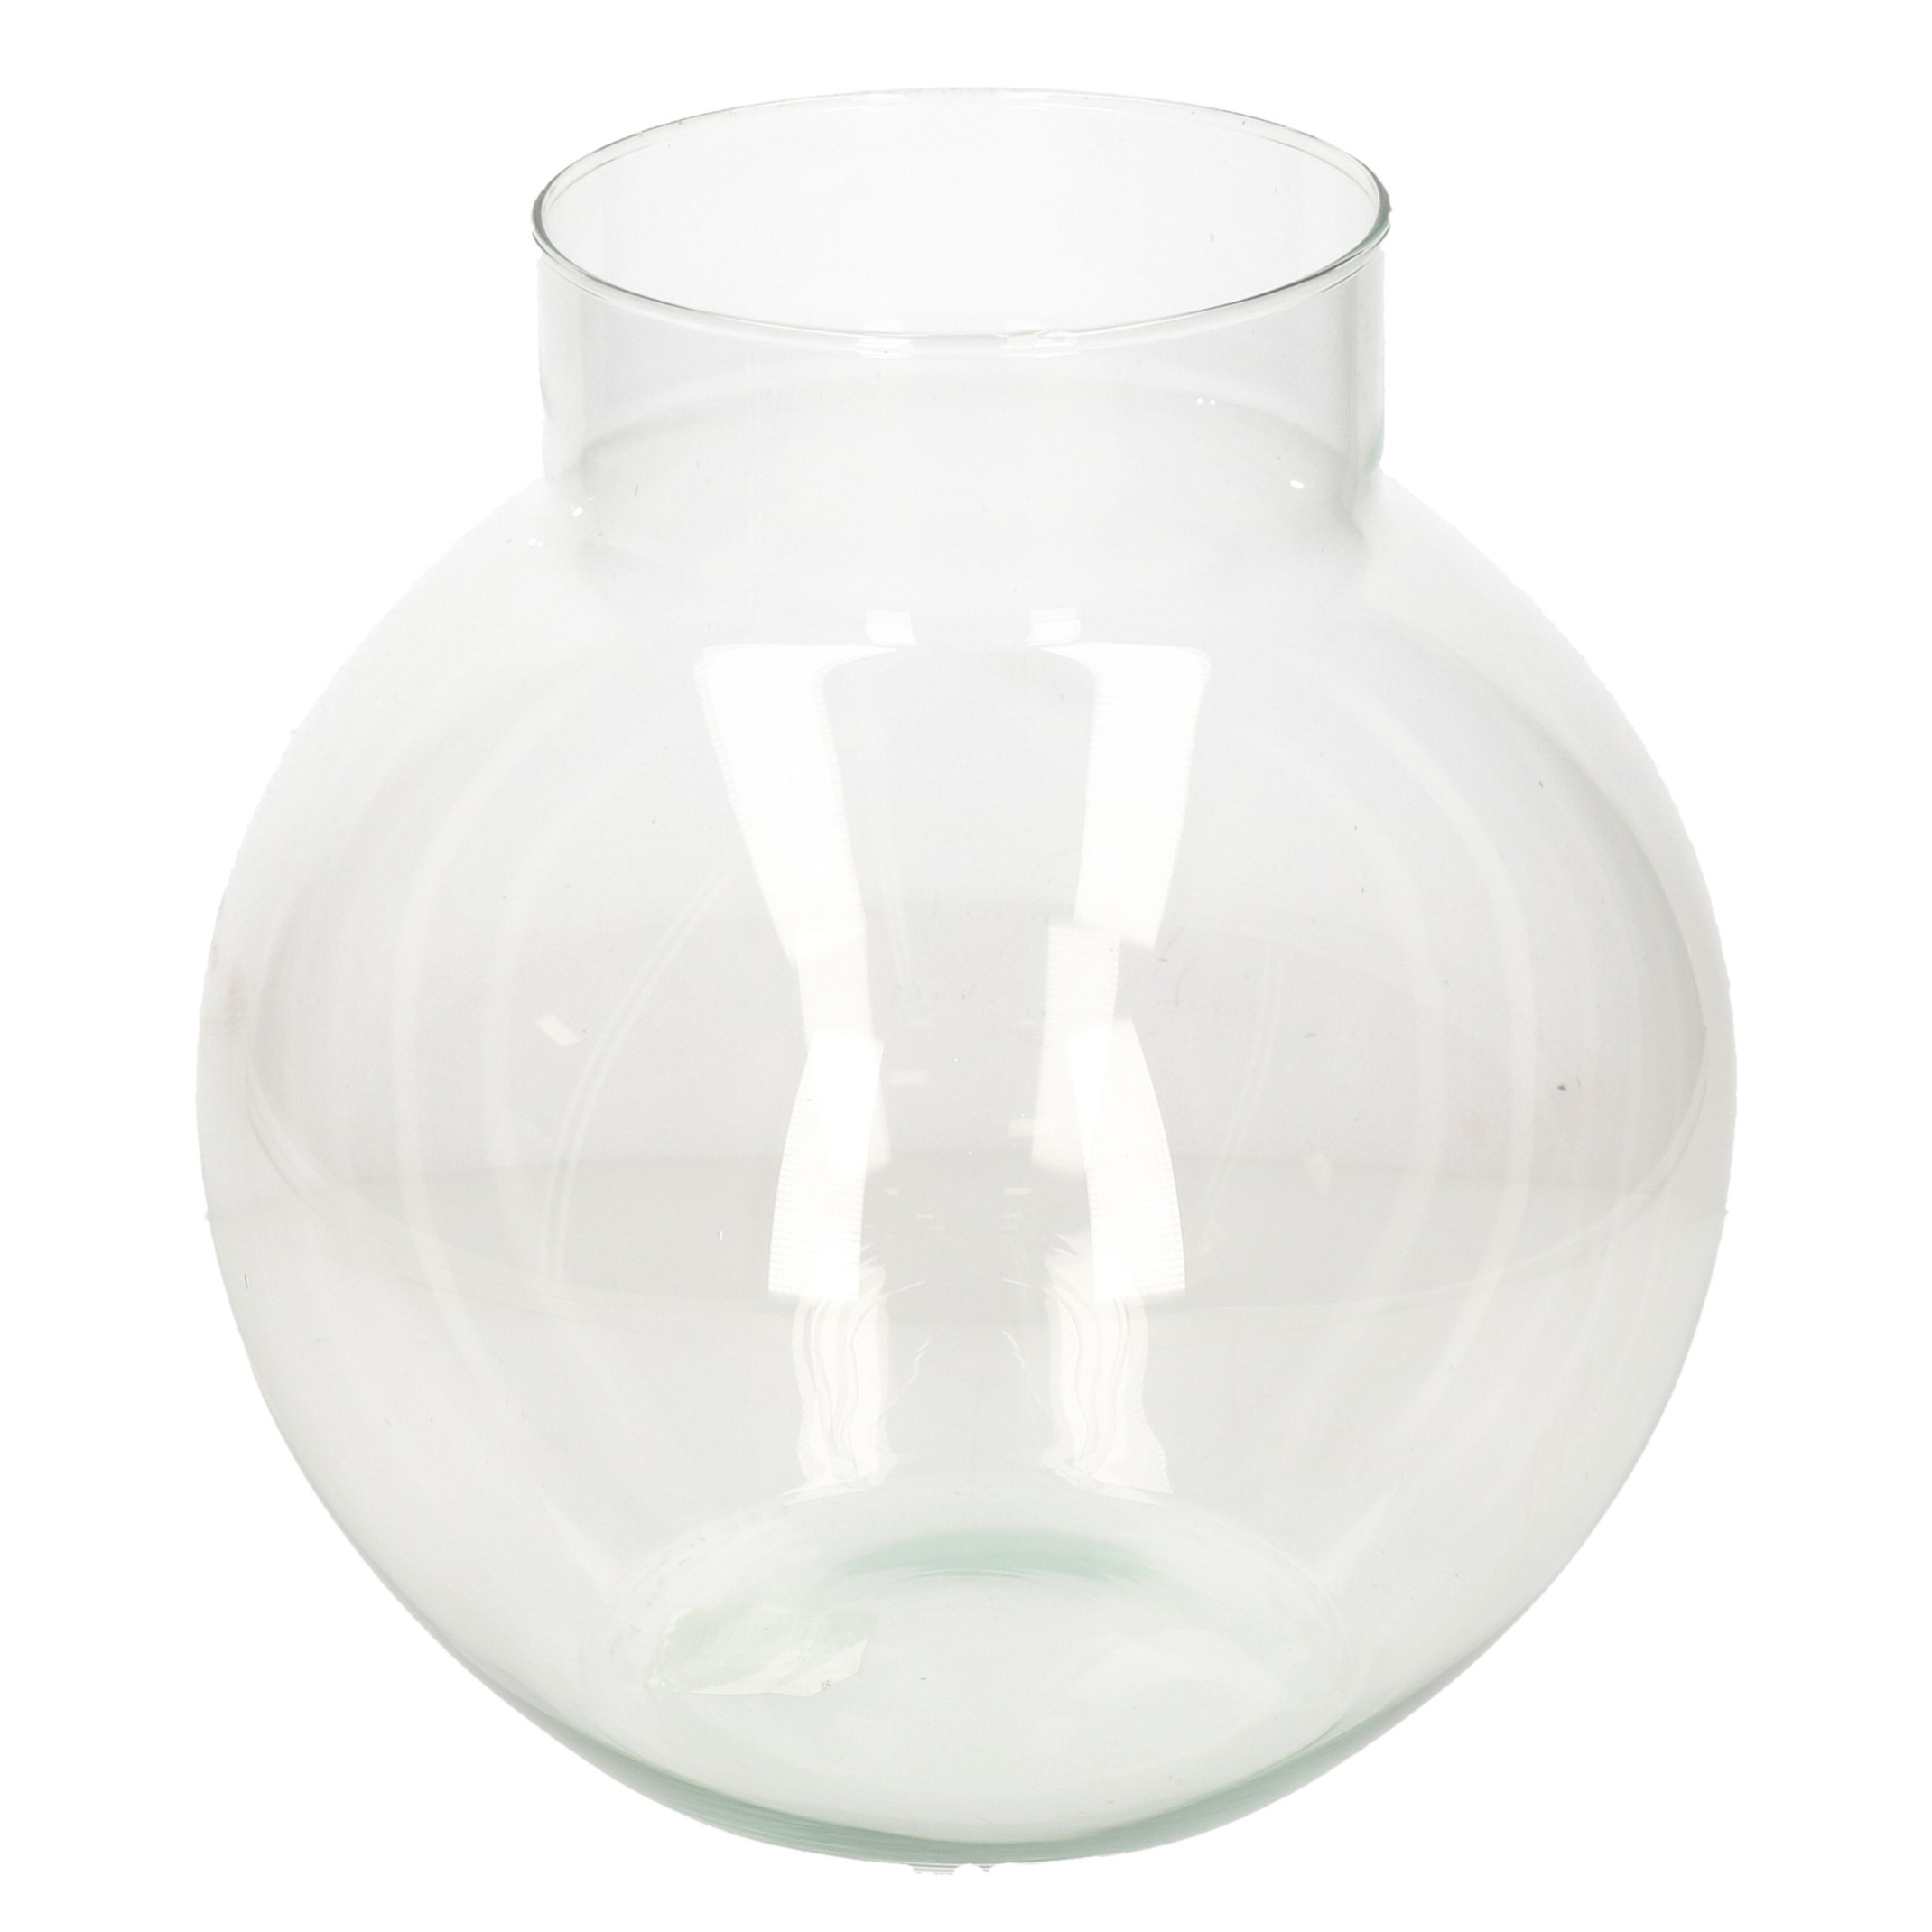 Transparante ronde vaas-vazen van glas 23 x 23 cm